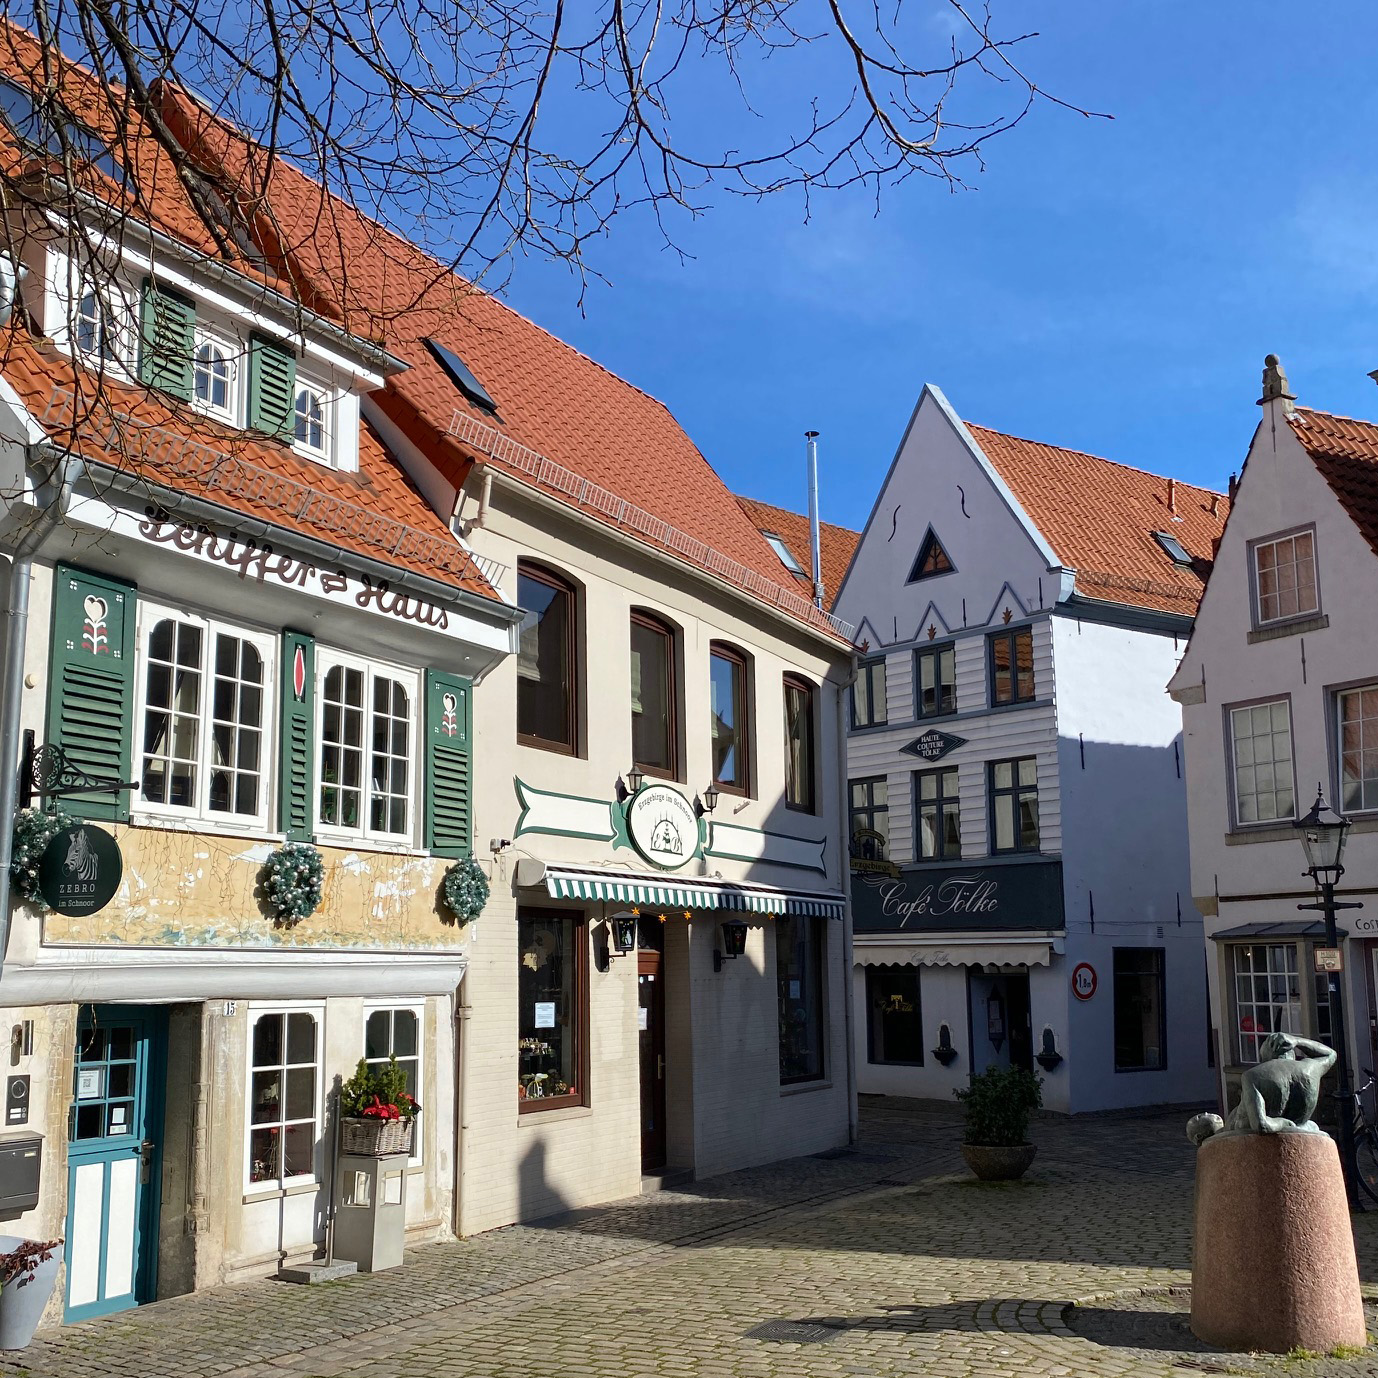 Altstadt von Bremen mit winzigen Häusern